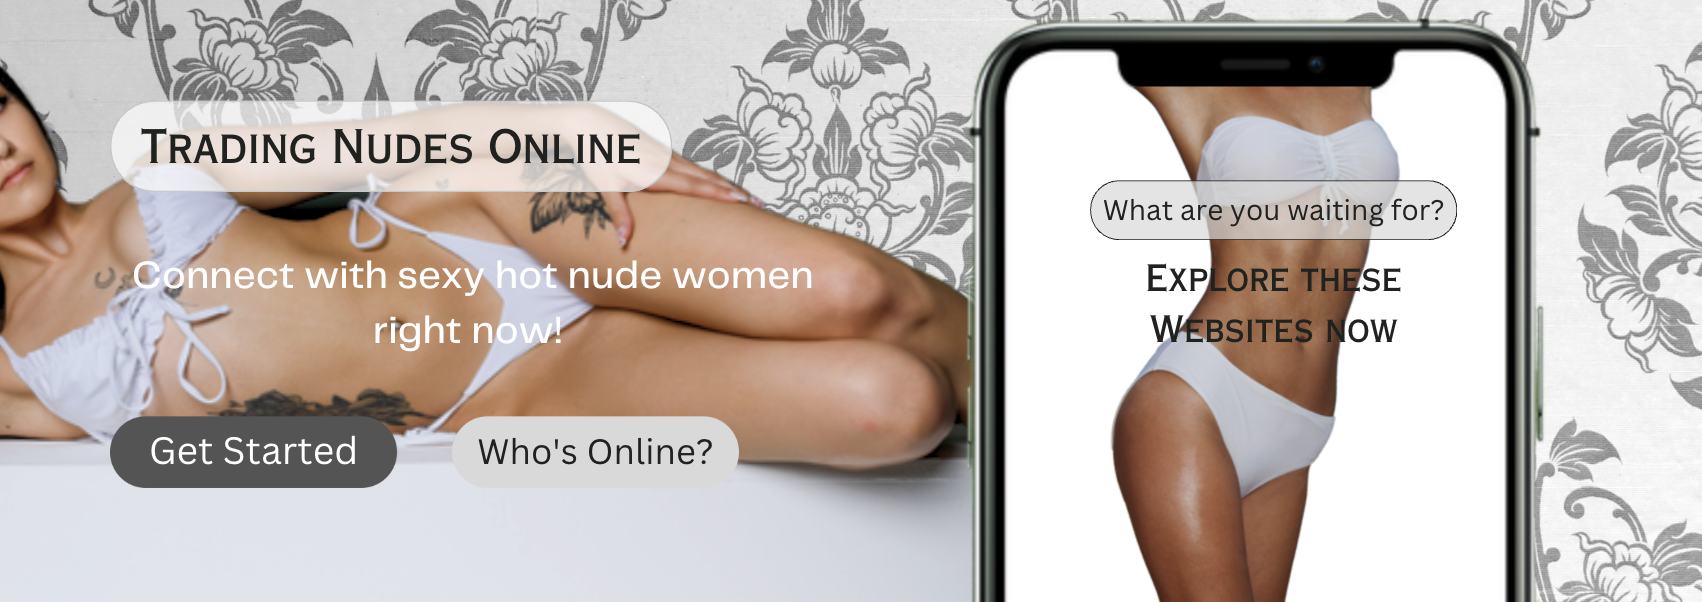 Nude pics website